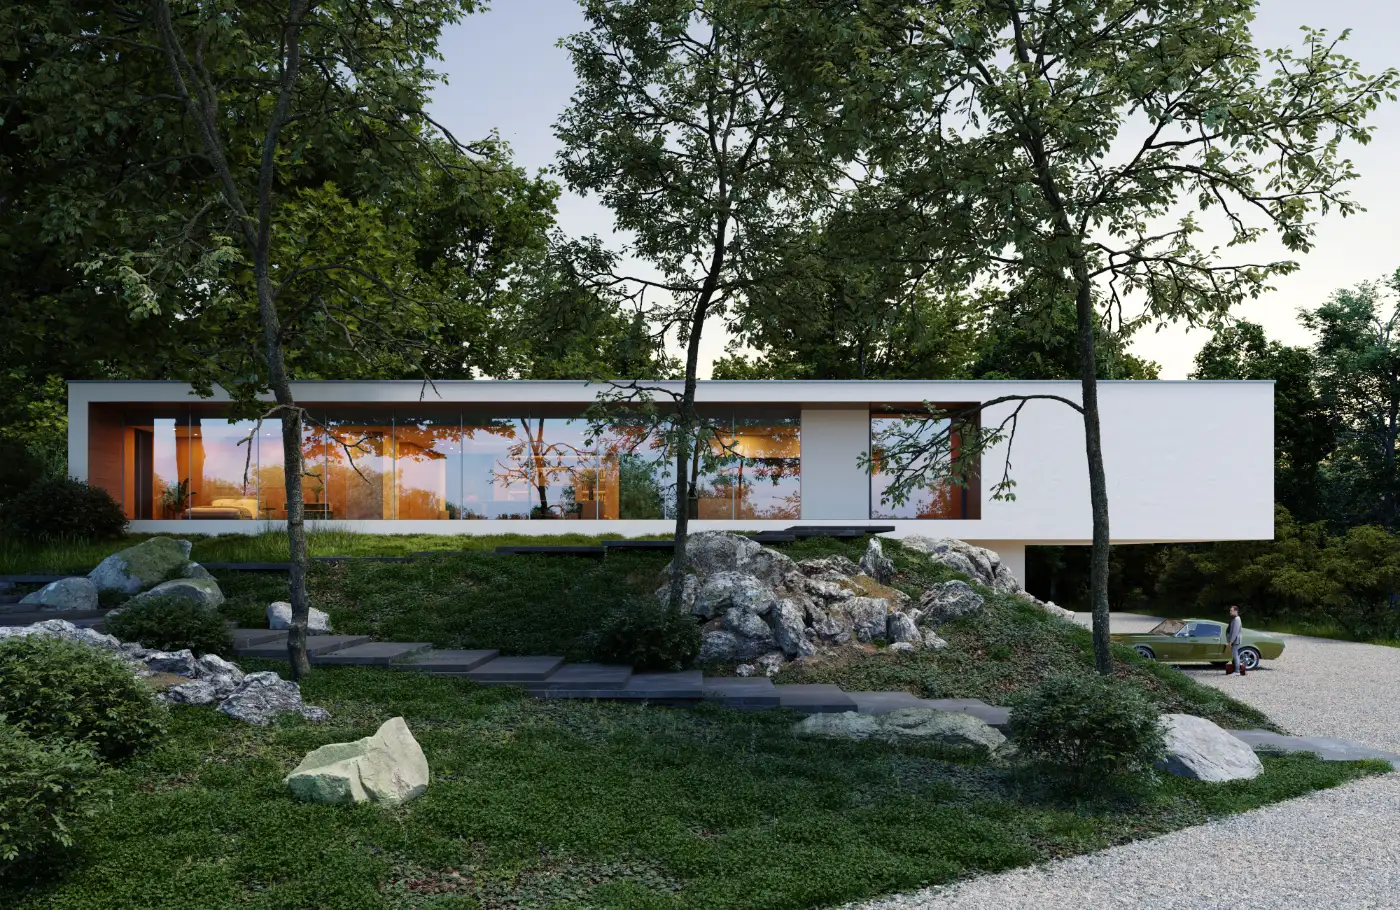 wizualizacja architektoniczna nowoczesnego domu w lesie położonego na skarpie